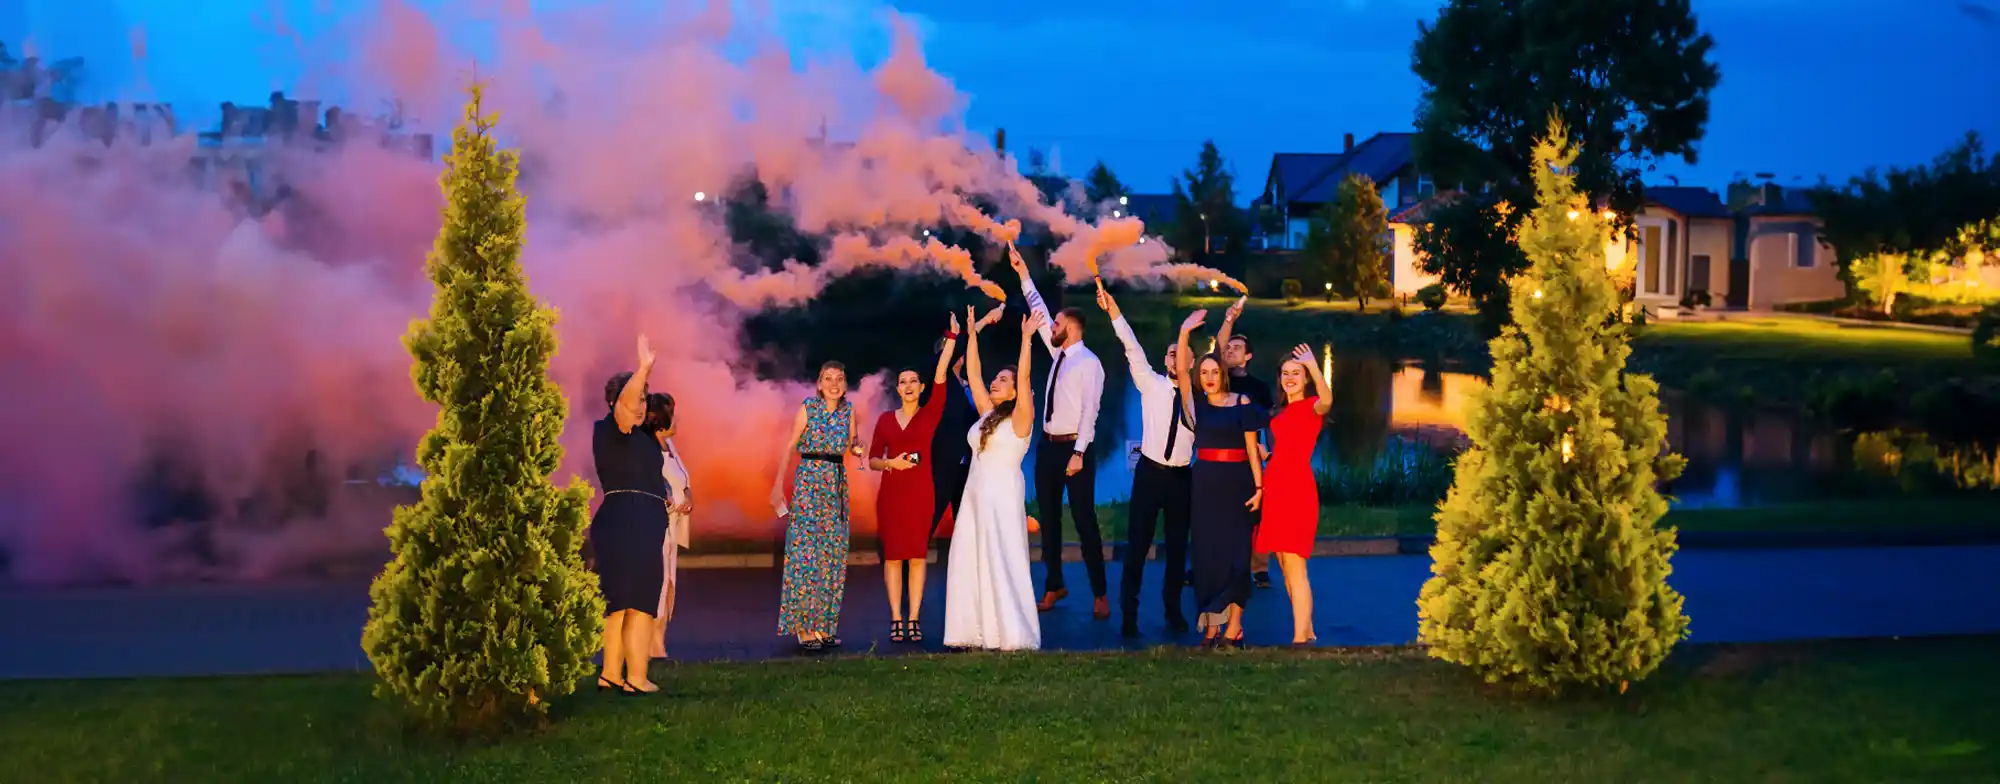 wedding celebration with orange smoke